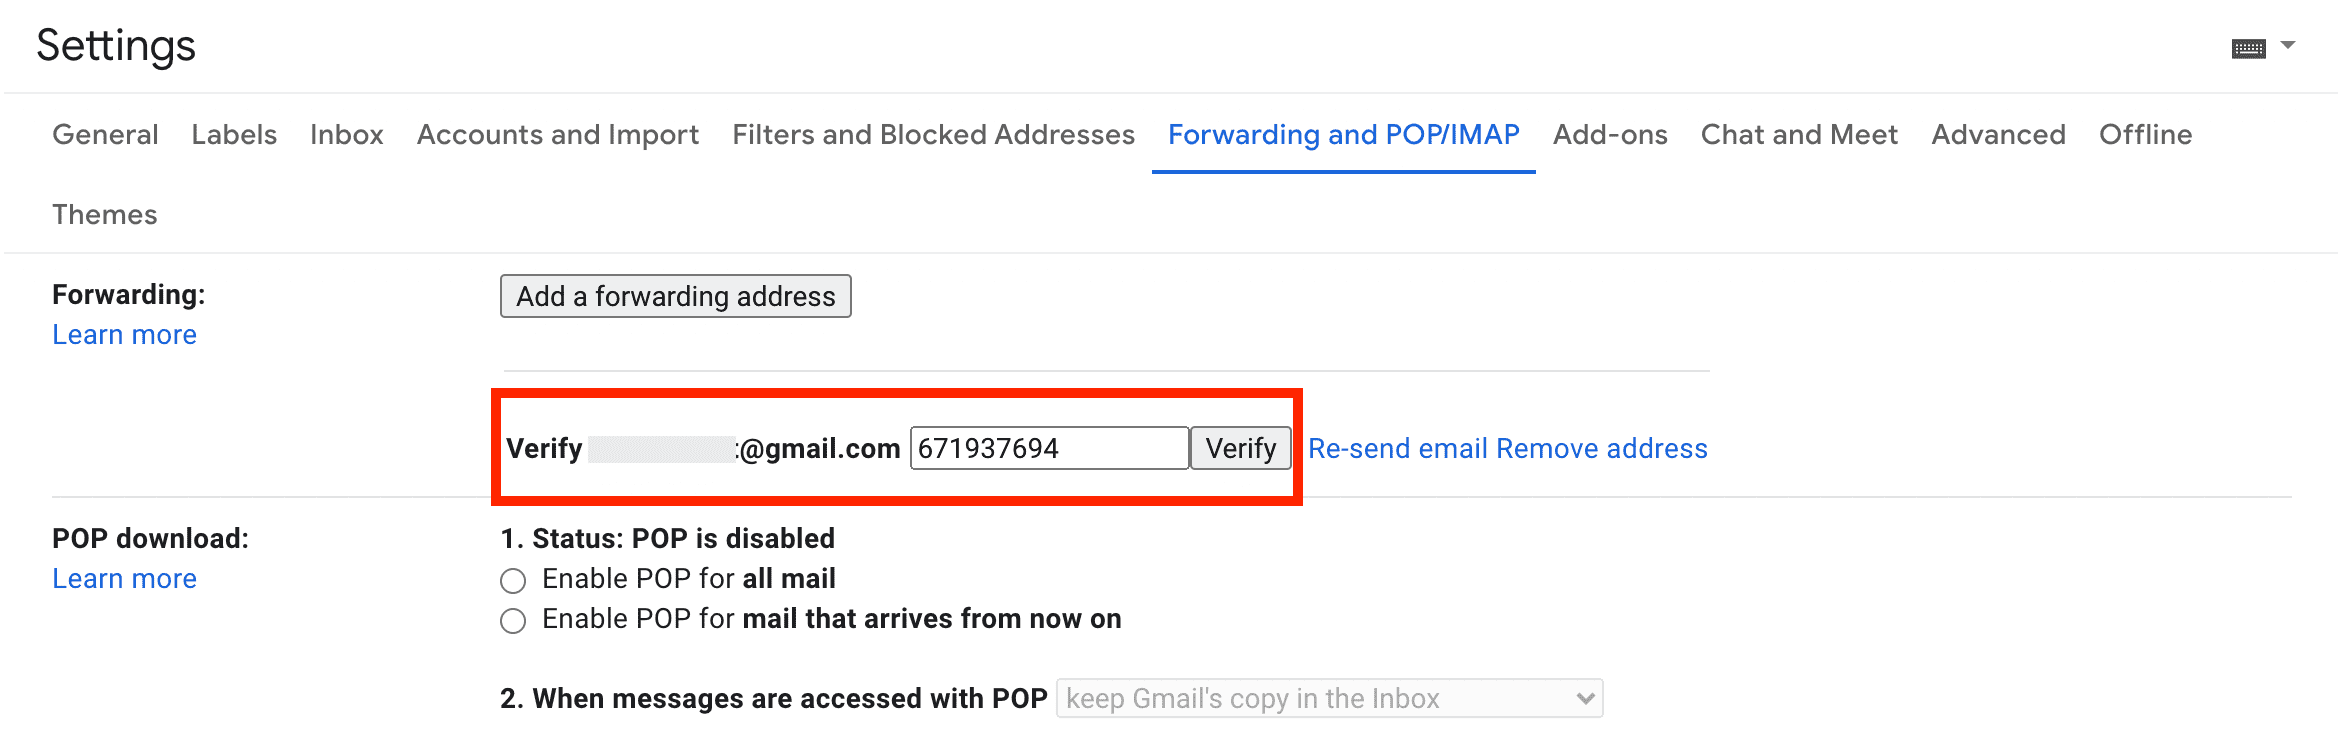 Verify forwarding address in Gmail